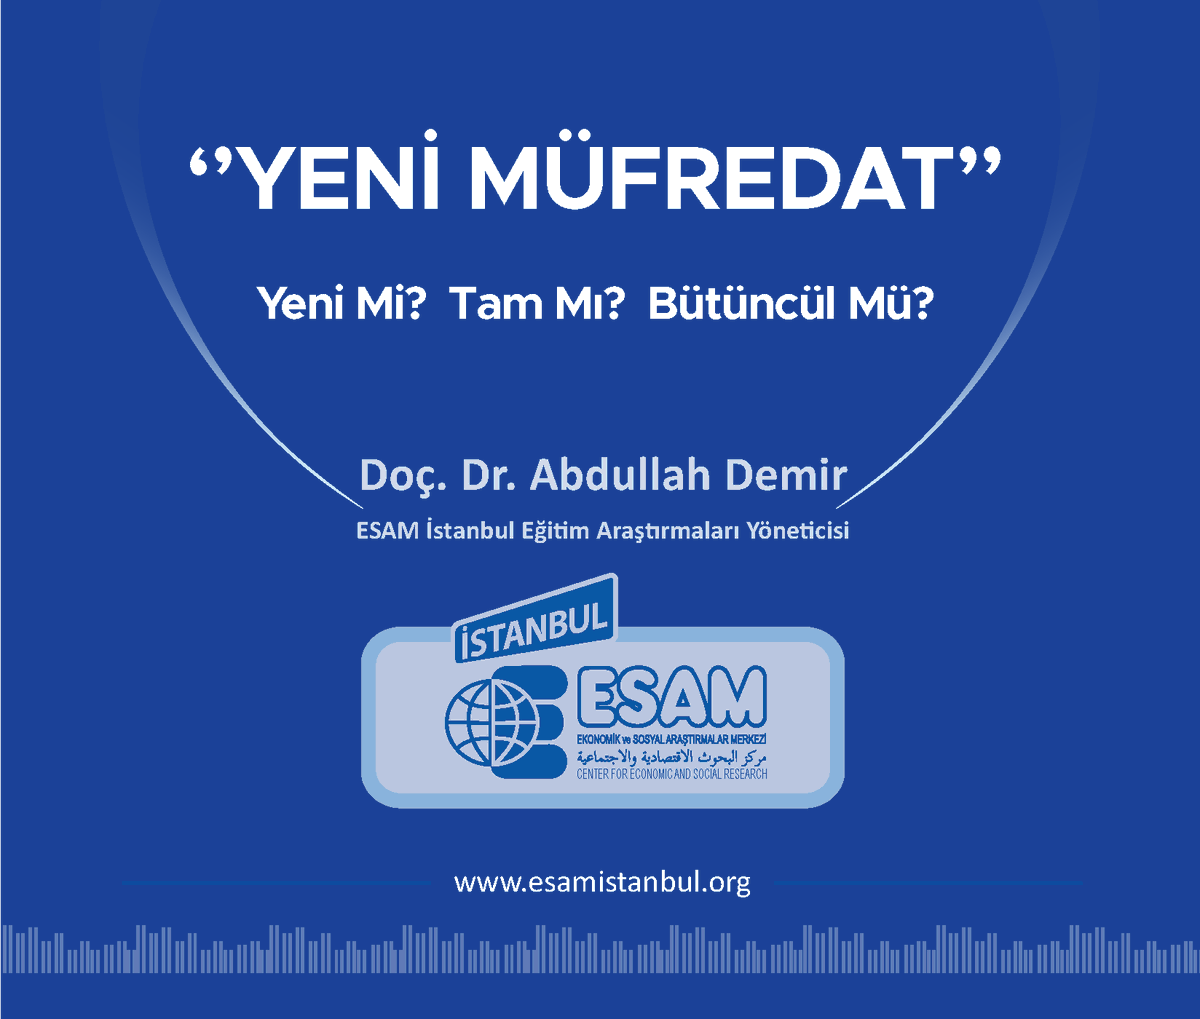 Eğitim Araş. Direk. ve Marmara Üniv. Teknoloji Fak. Öğr. Ü. Doç. Dr. Abdullah Demir(@Dr_A_Demir) tarafından “Türkiye Yüzyılı Maarif Modeli” müfredat çalışmasına yönelik yapılan değerlendirmeler ekte dikkatlerinize sunulmuştur.@meb_ttkb esamistanbul.org/wp-content/upl… #KöklerdenGeleceğe